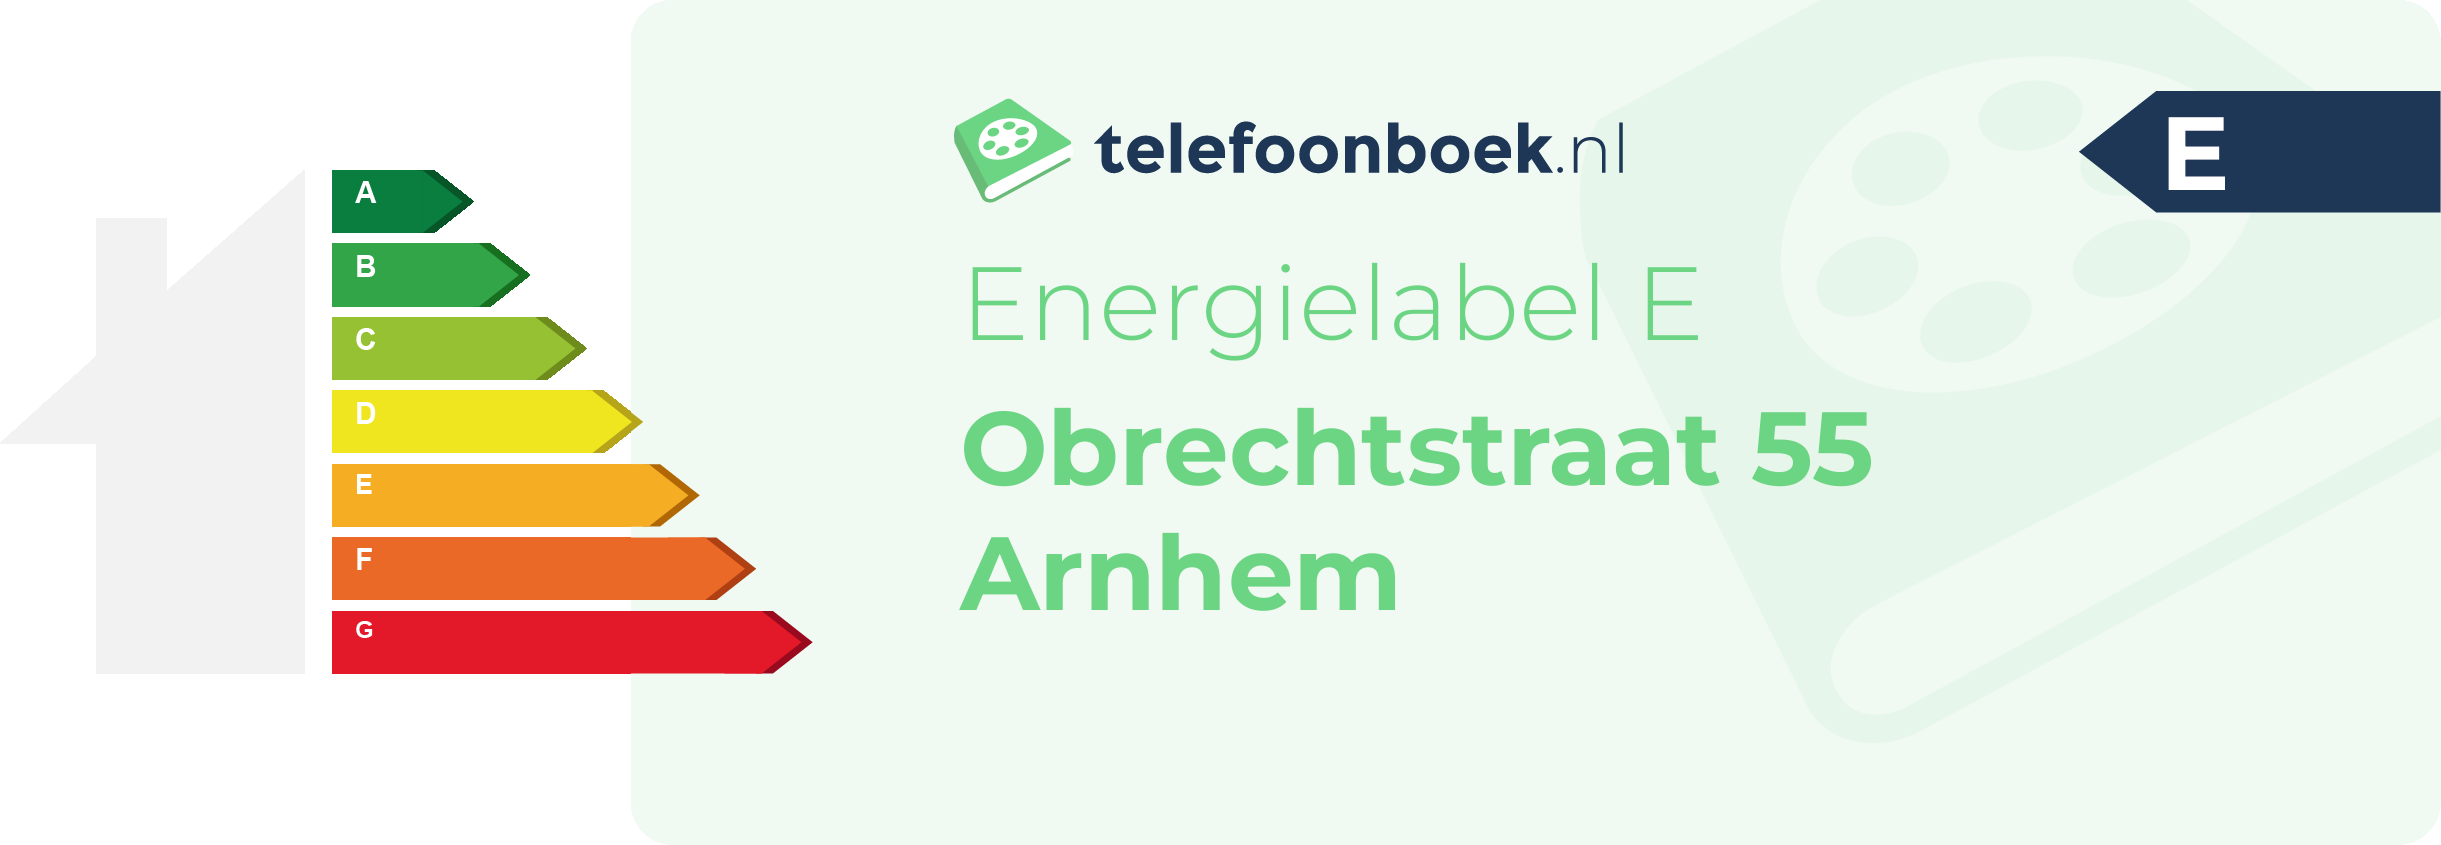 Energielabel Obrechtstraat 55 Arnhem